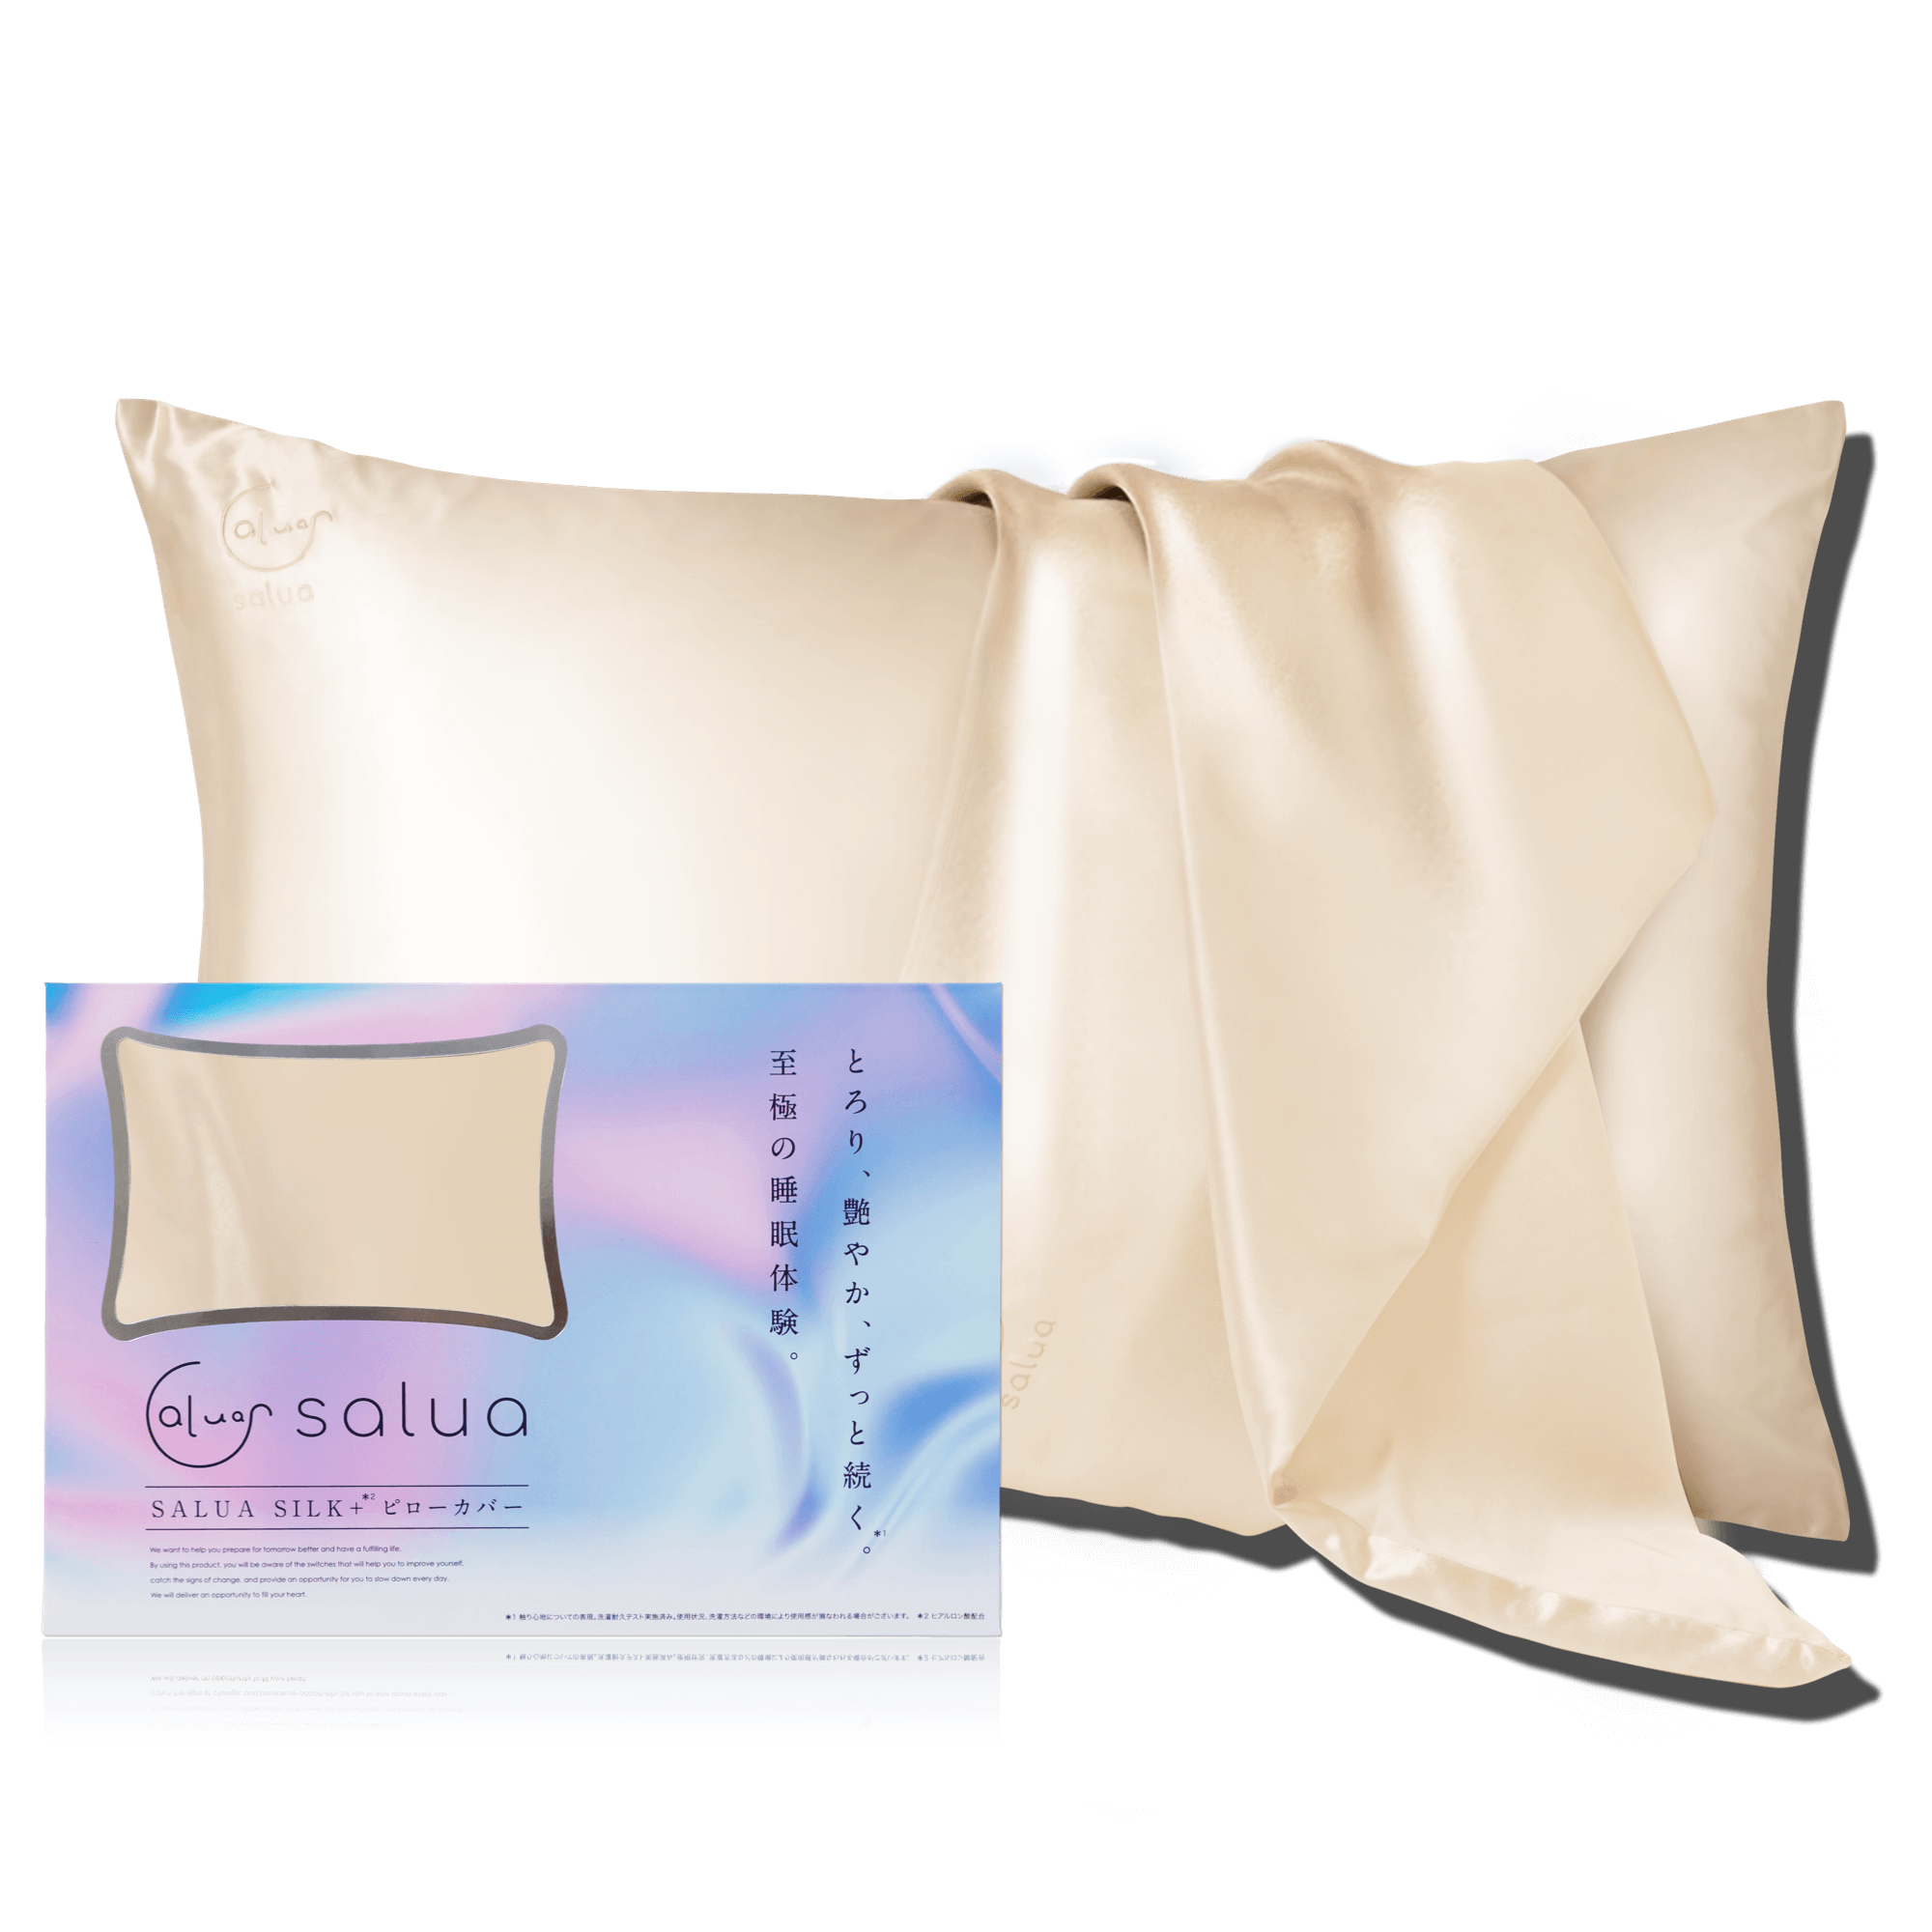 シルク 枕カバー 「シルク100% 」 シルク枕カバー 髪 寝具カバー 枕 ピローケース 43×63 22匁 片面 枕 ナイトキャップ